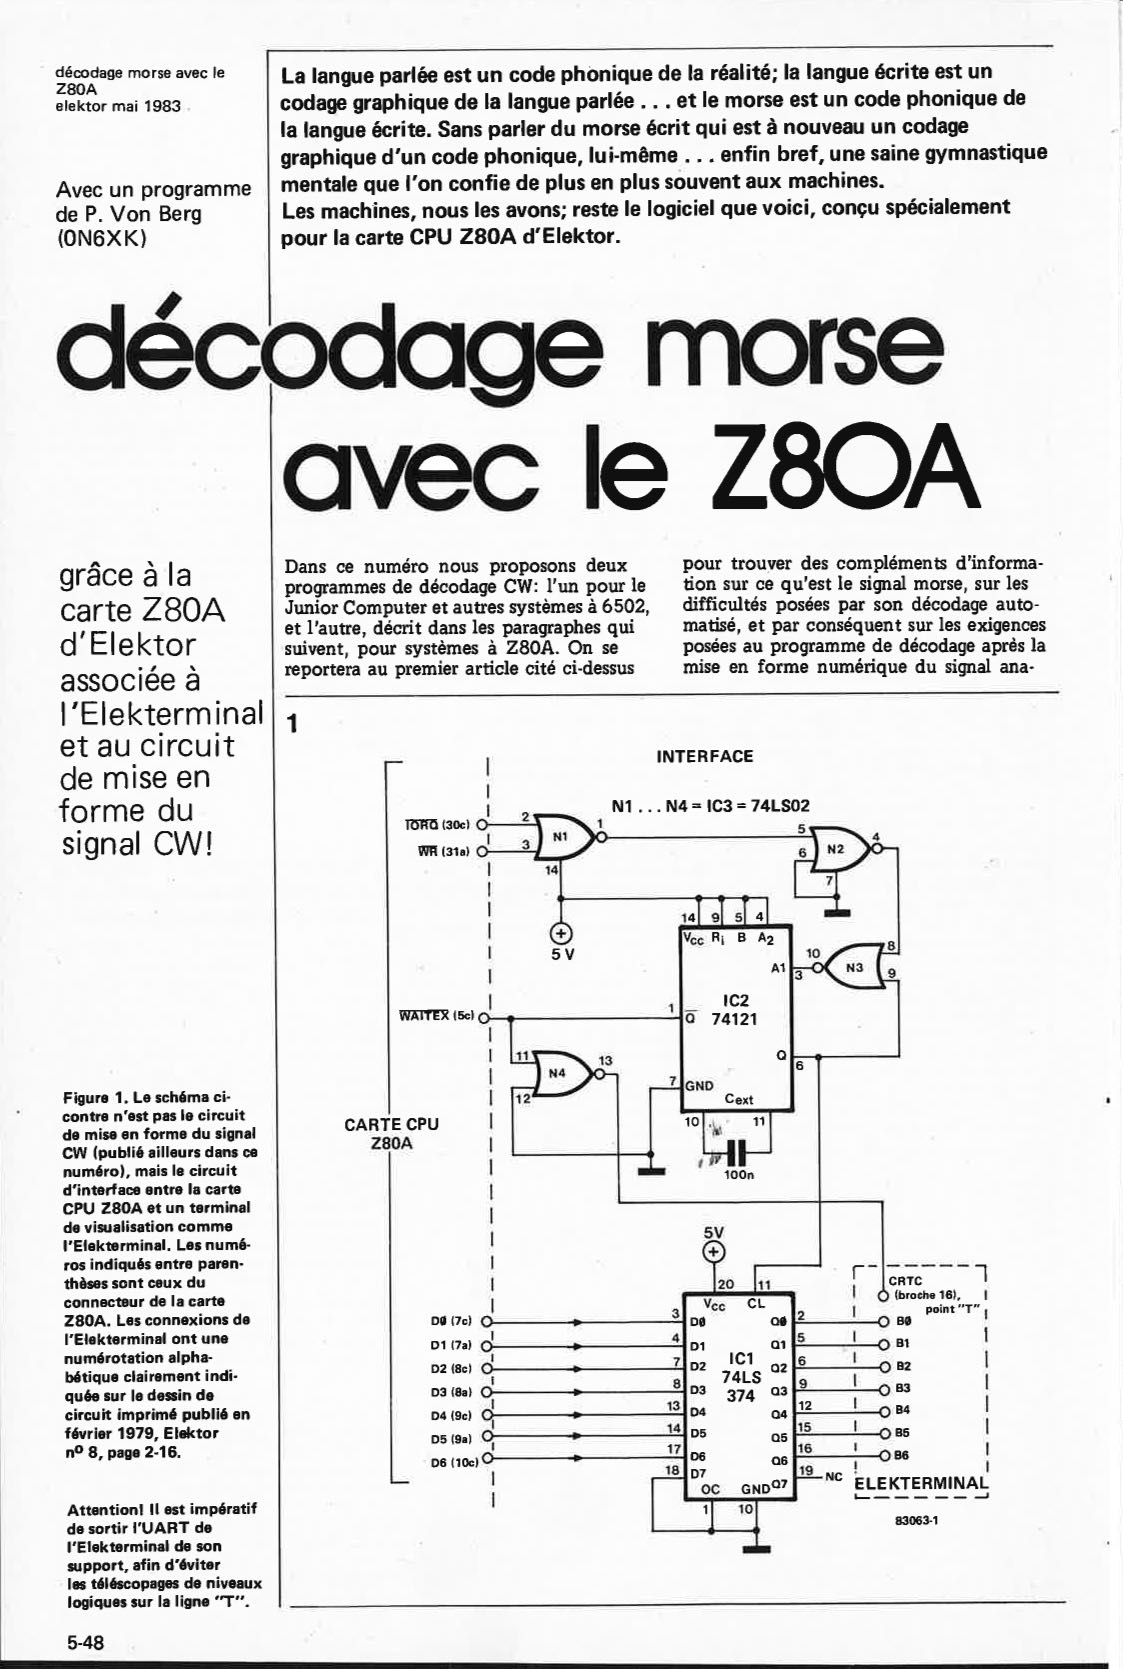 décodage morse avec le Z80A